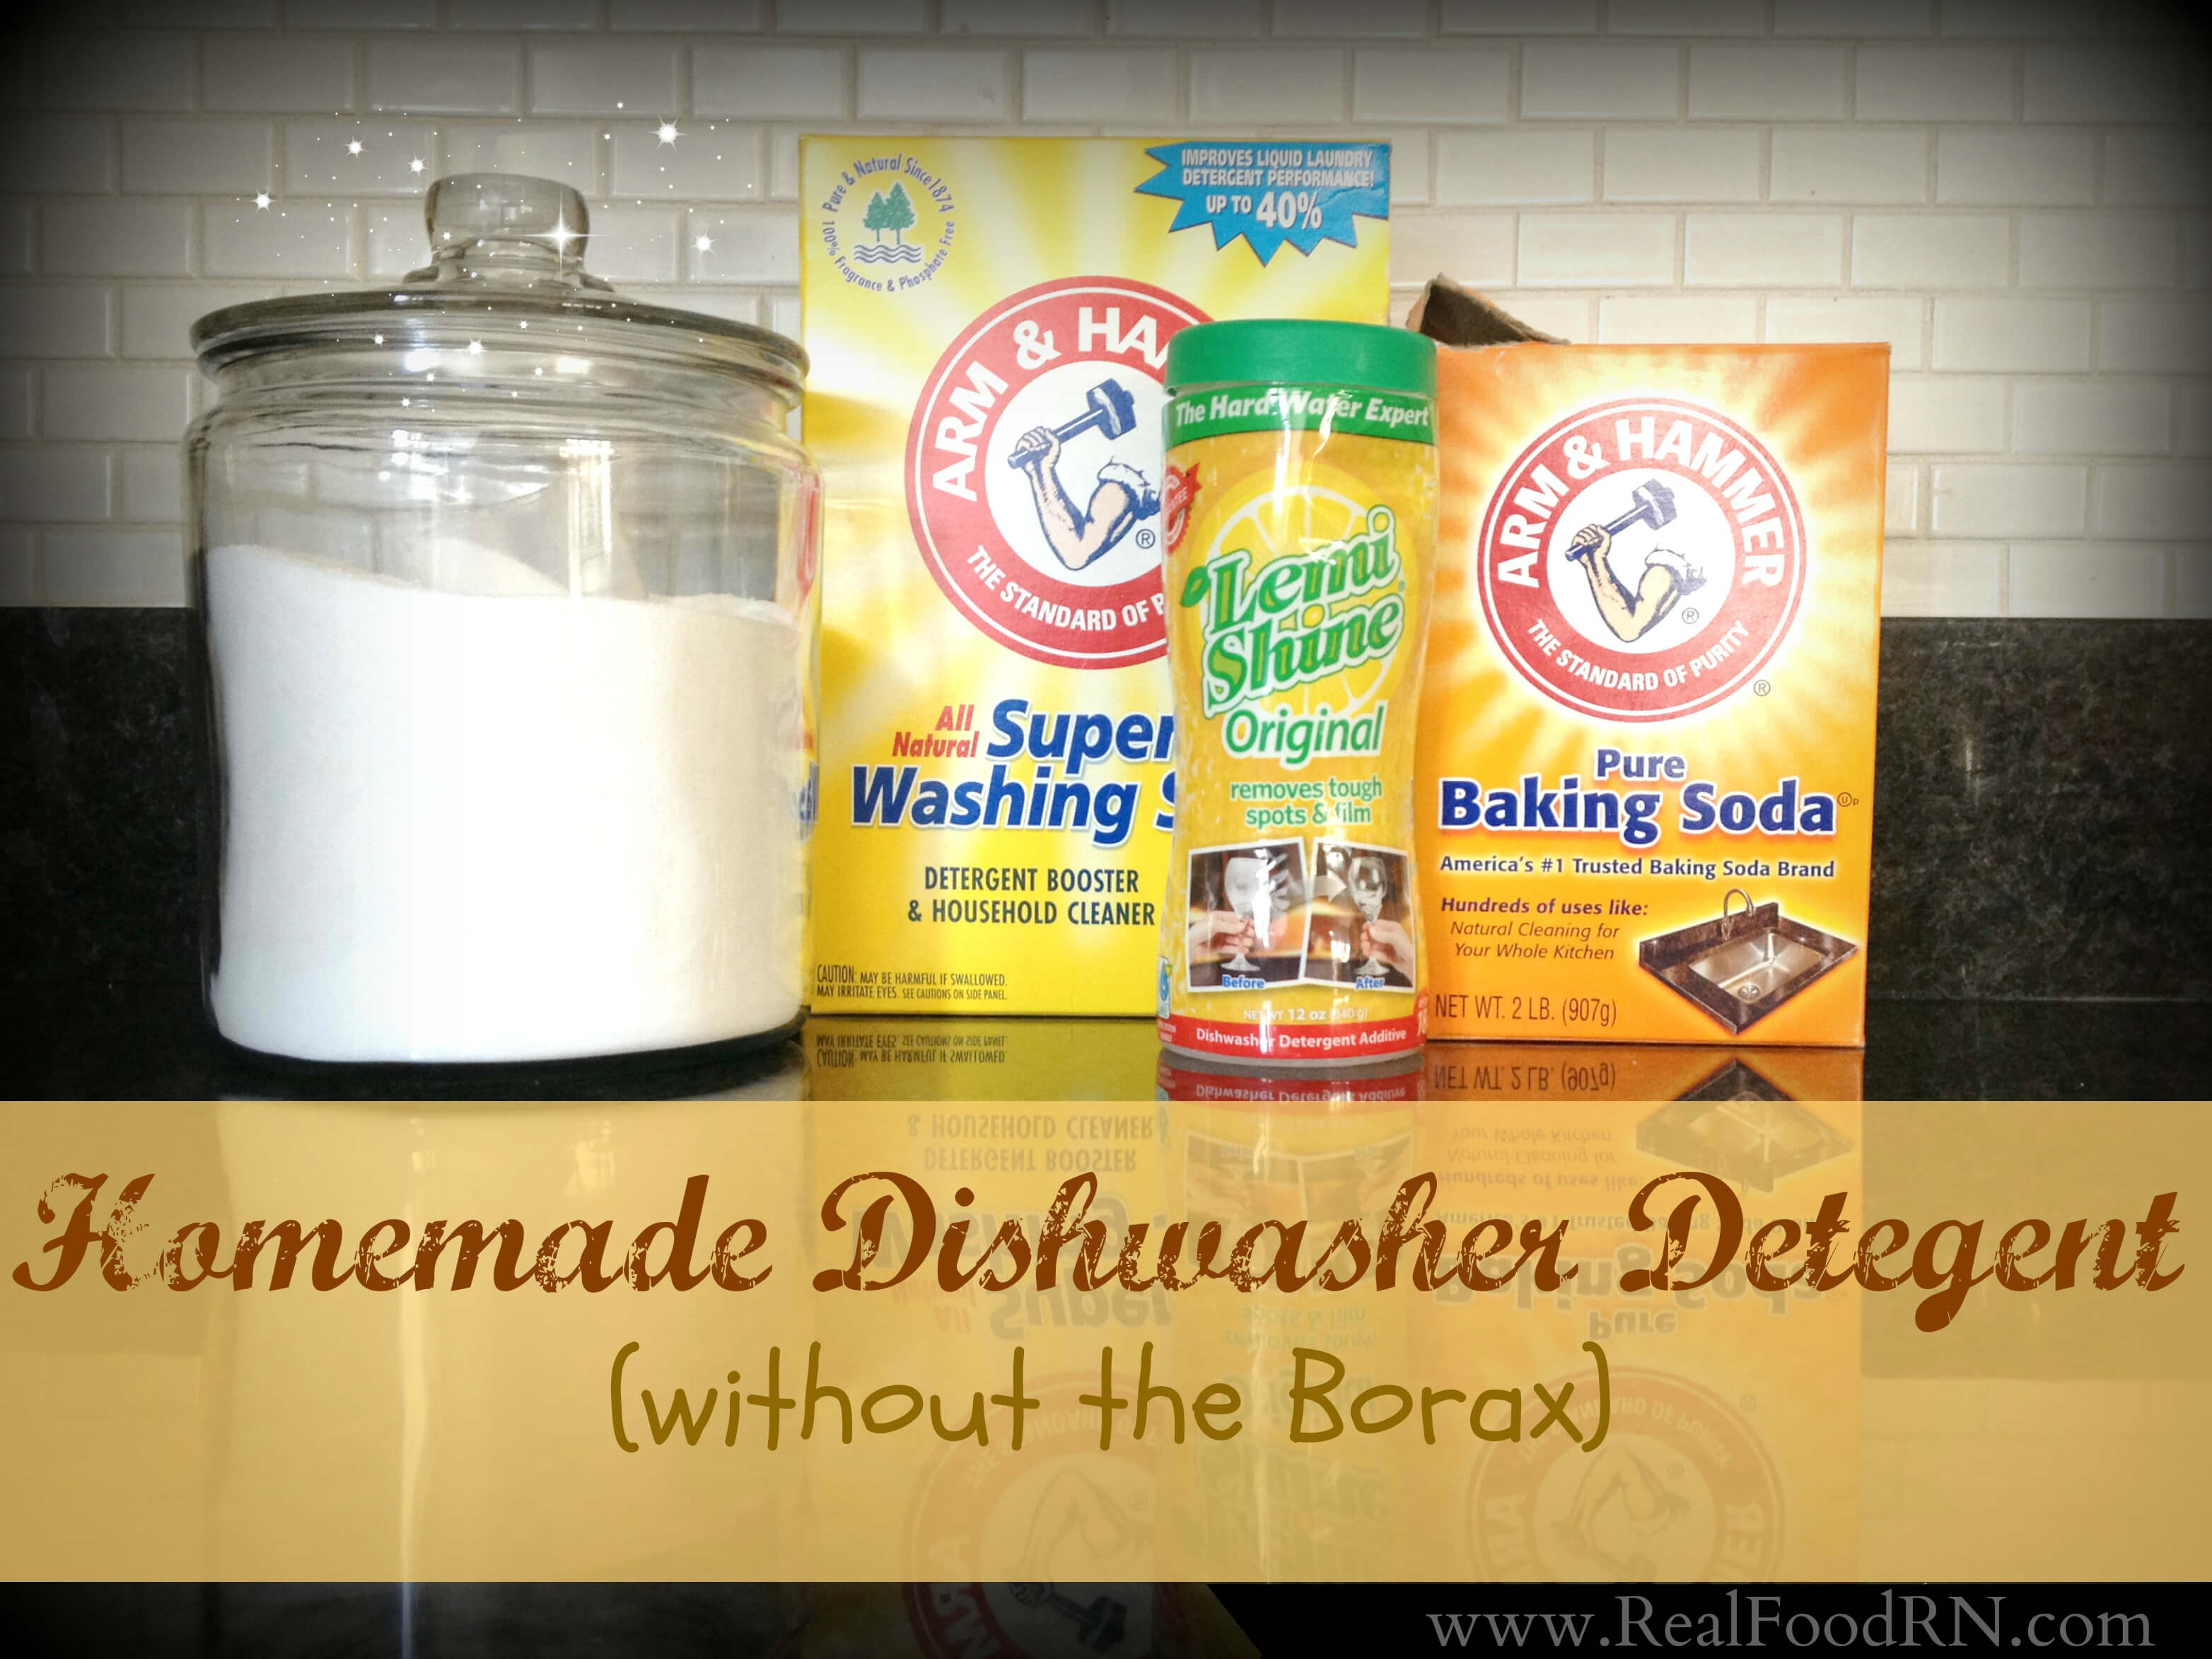 Best ideas about DIY Dishwasher Detergent
. Save or Pin Homemade dishwasher detergent without borax Now.